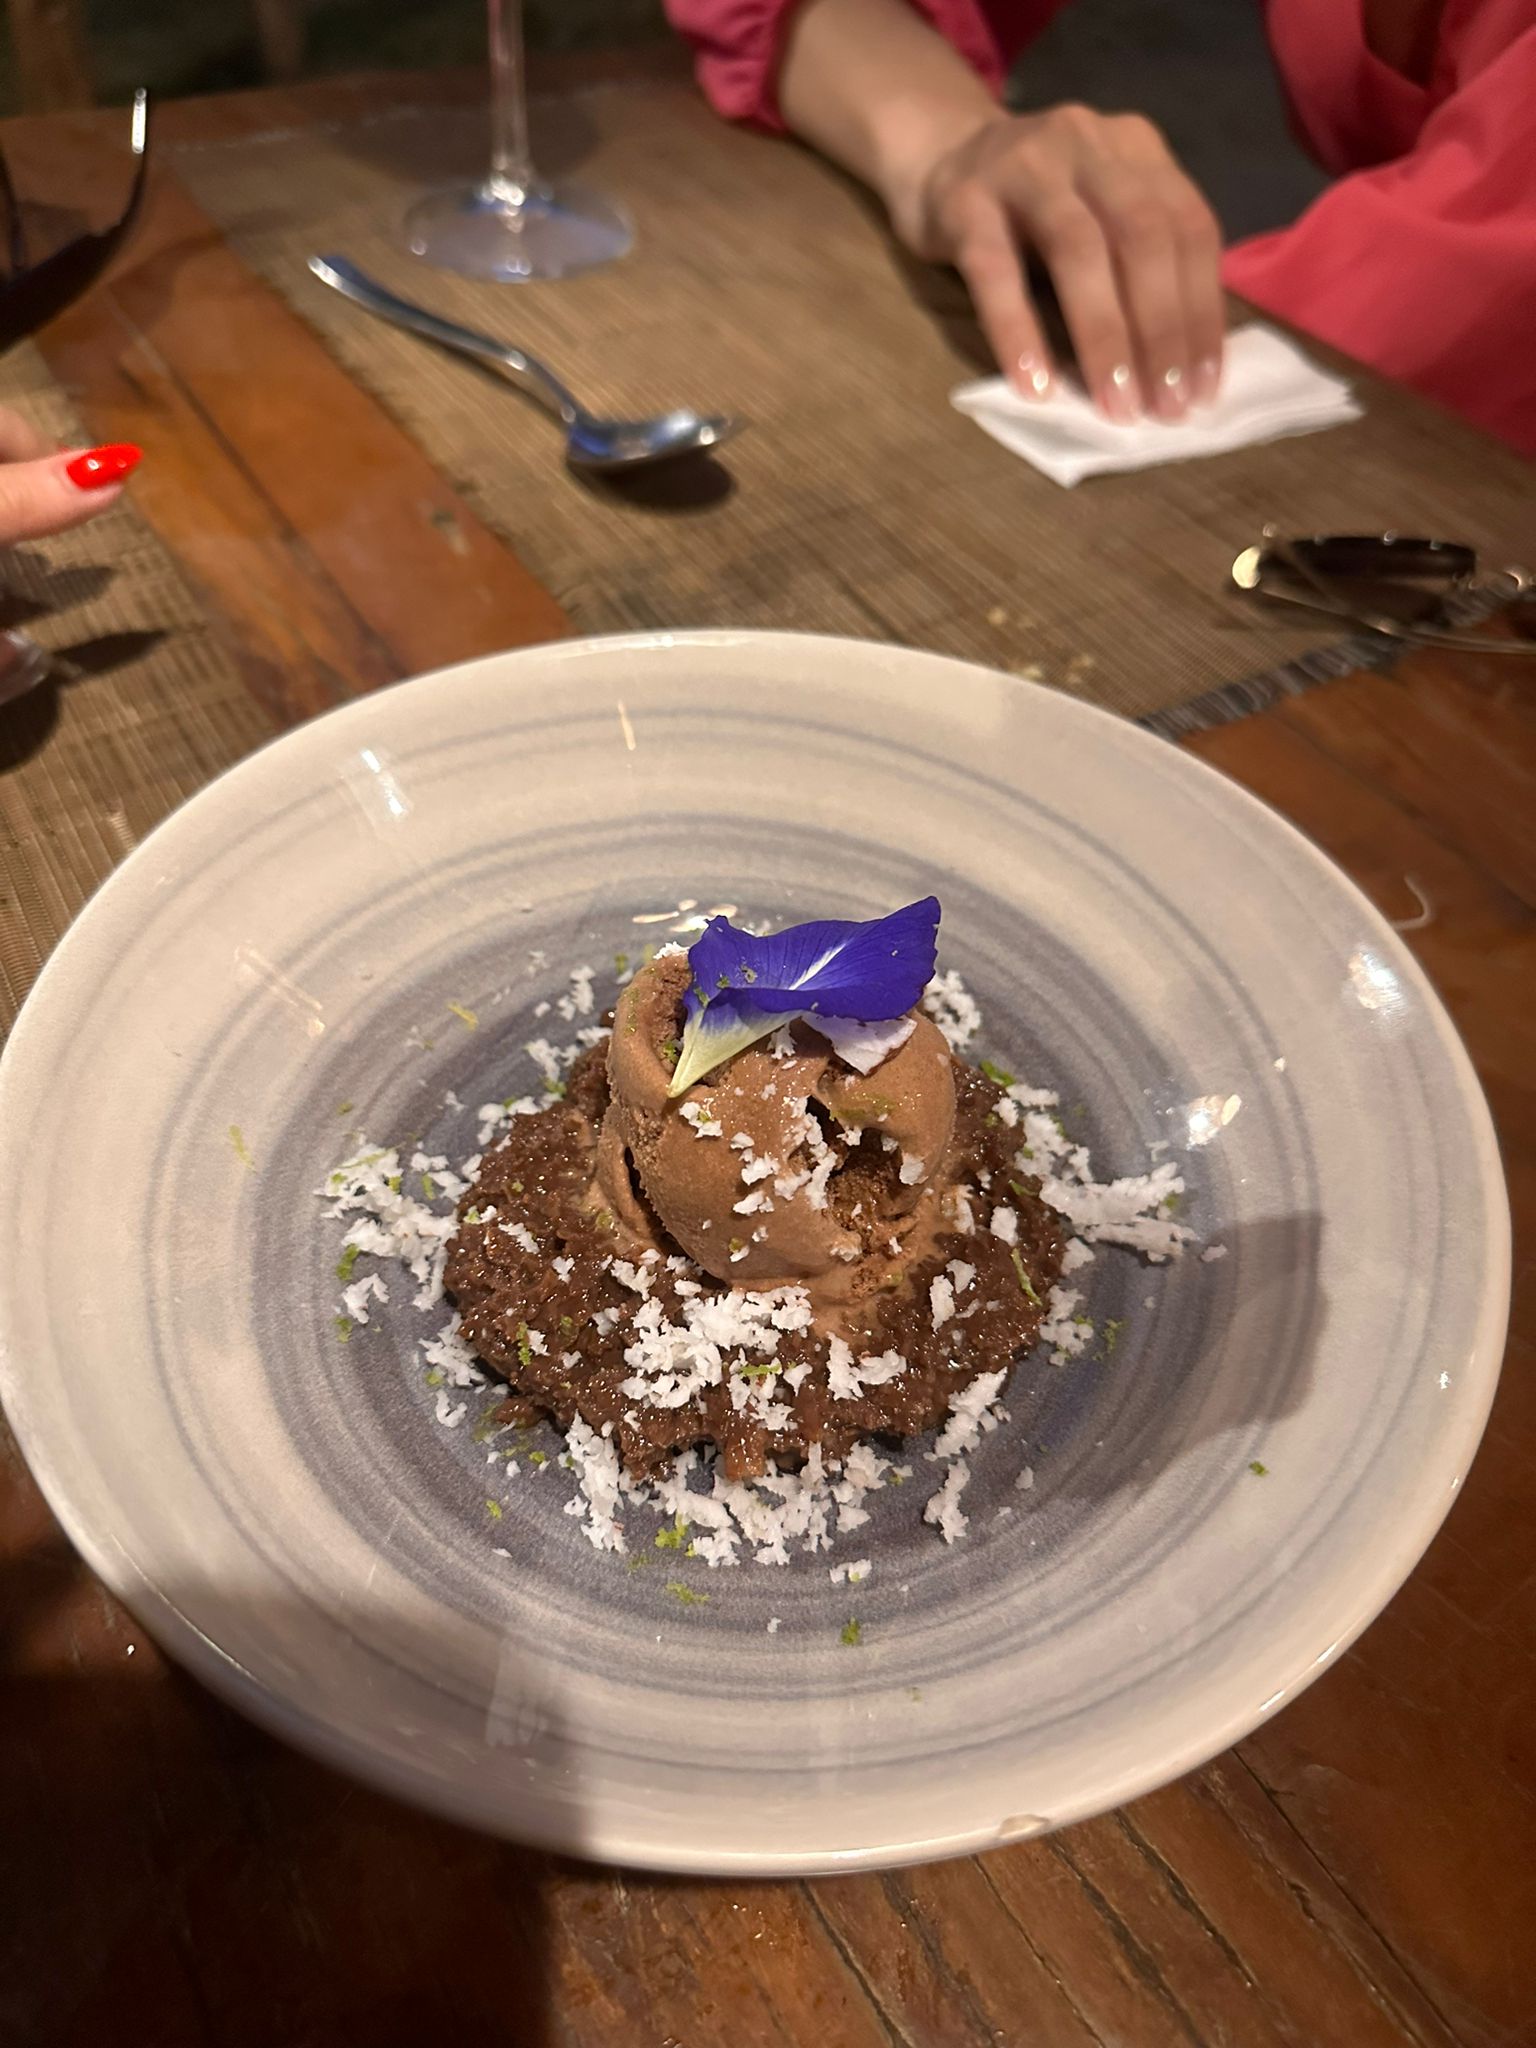 Sobremesa Prestígio: Cocada de chocolate, acompanhada de sorvete de chocolate e finalizada com raspas de coco fresco por cima.